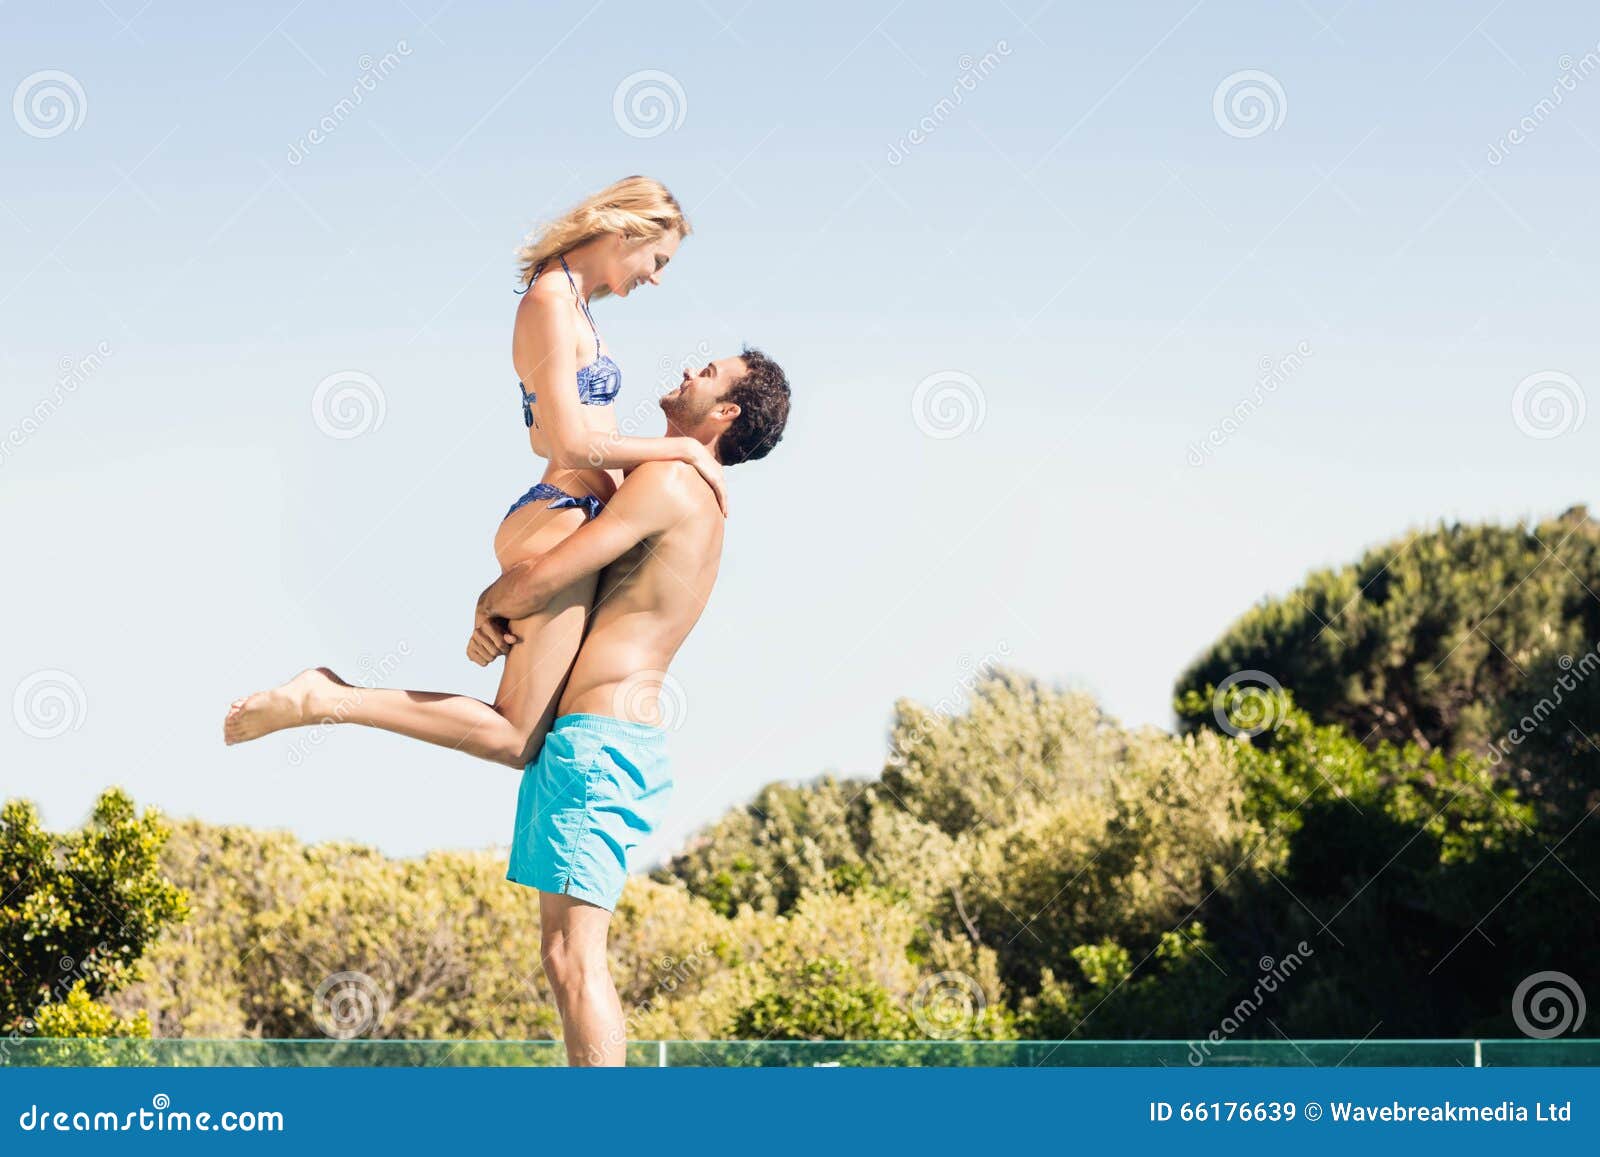 Девушка носит парня на руках. Мужчина несет девушку на пляже. Парень несёт девушку на вытянутых руках. Парень несёт девушку на руках на пляже. Человека несут на вытянутых руках.